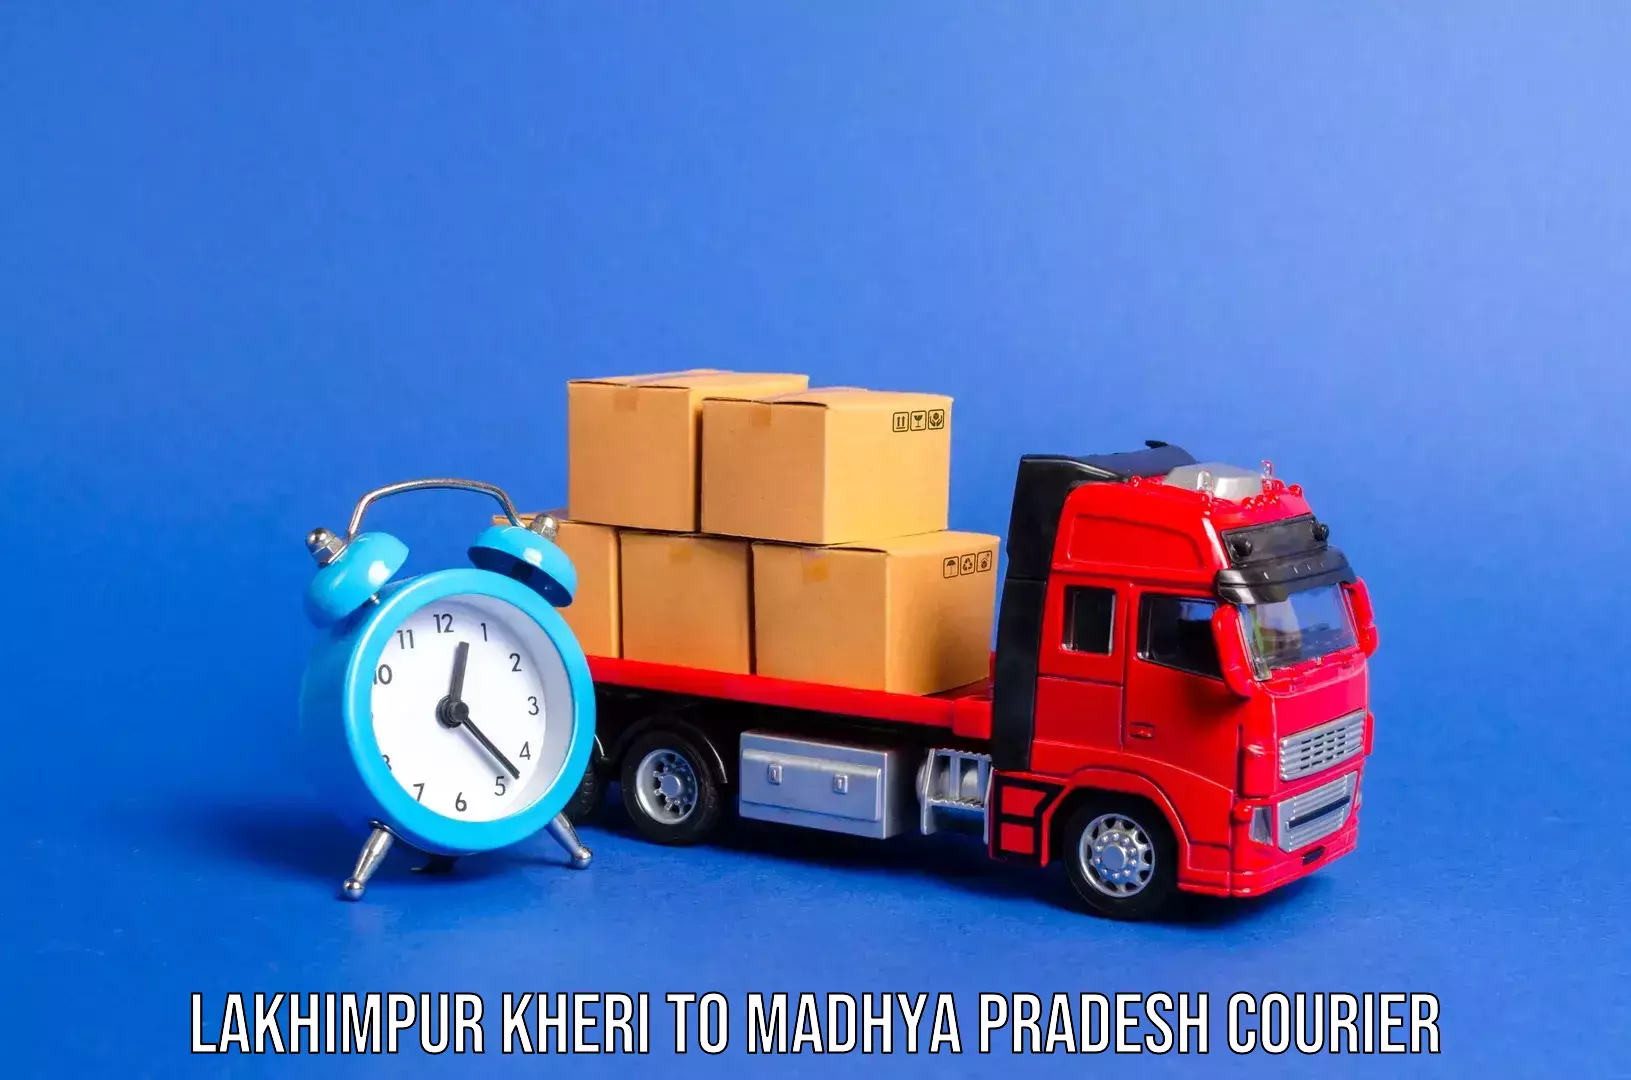 Luggage transport service Lakhimpur Kheri to Thikri